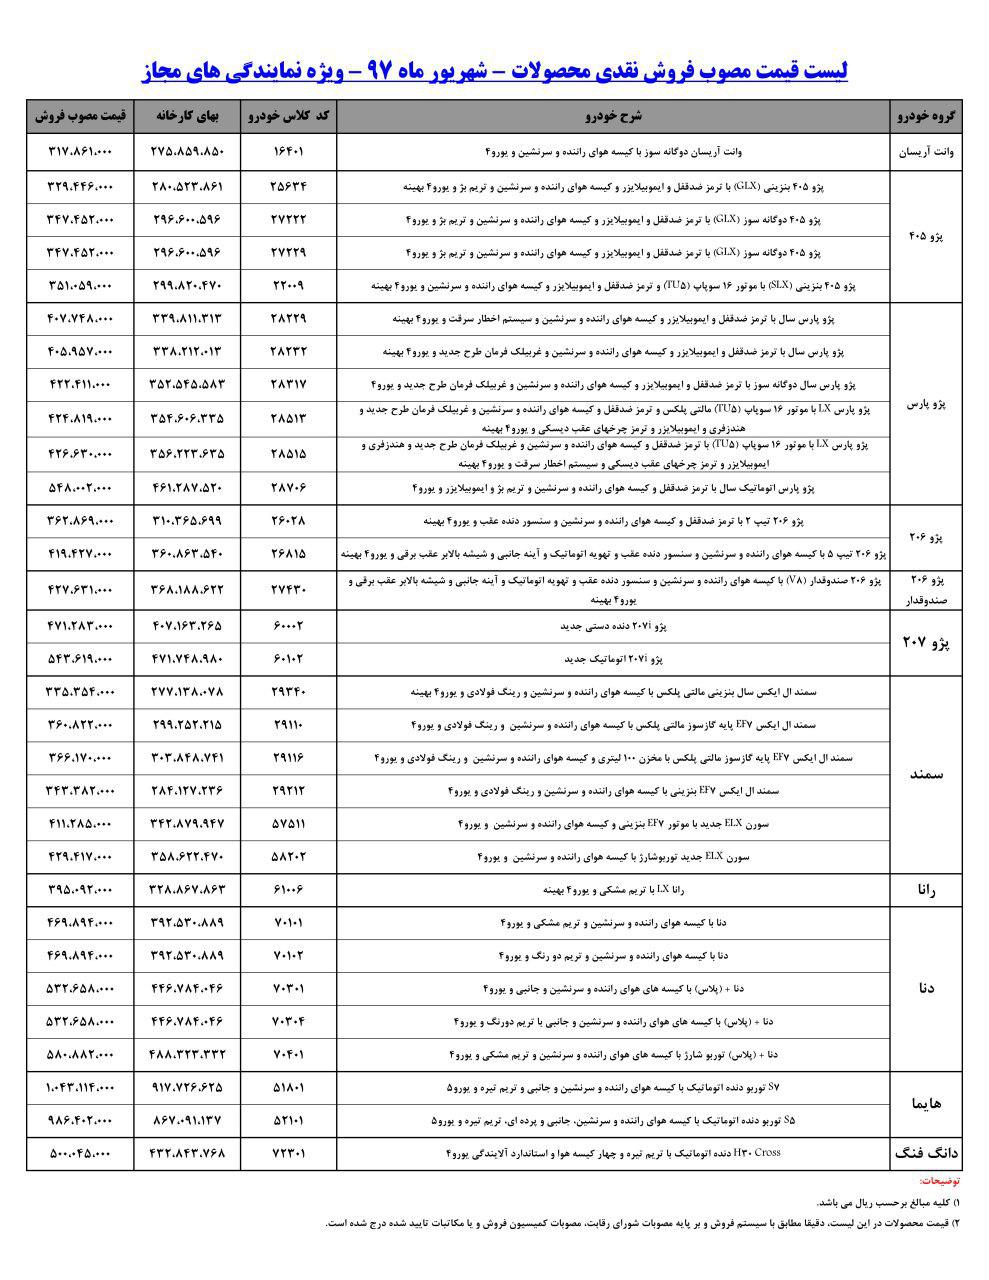 لیست قیمت محصولات ایران خودرو شهریور 97